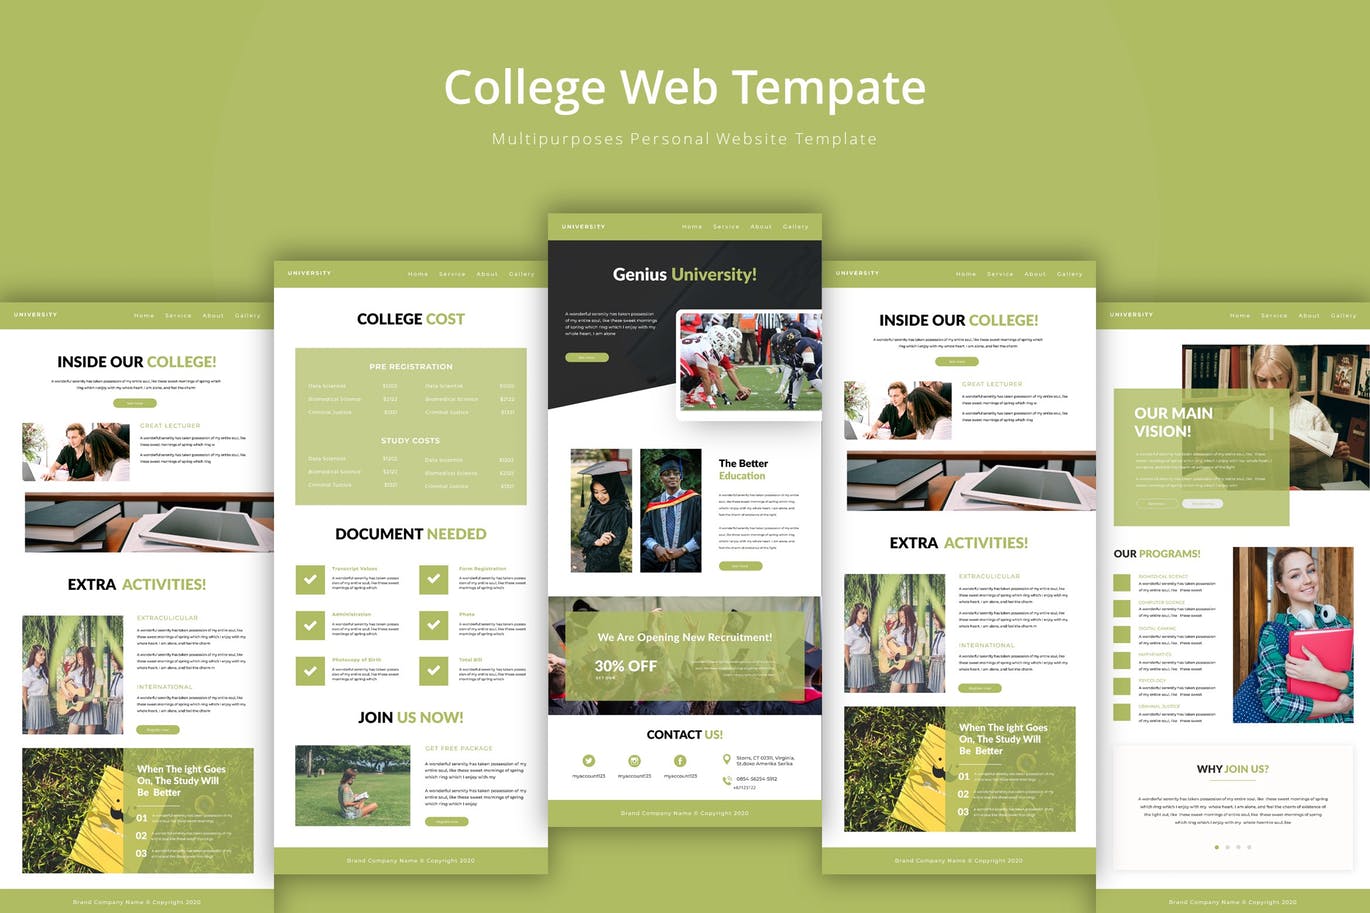 大学/学院教育网站设计素材库精选模板 University Web Template插图